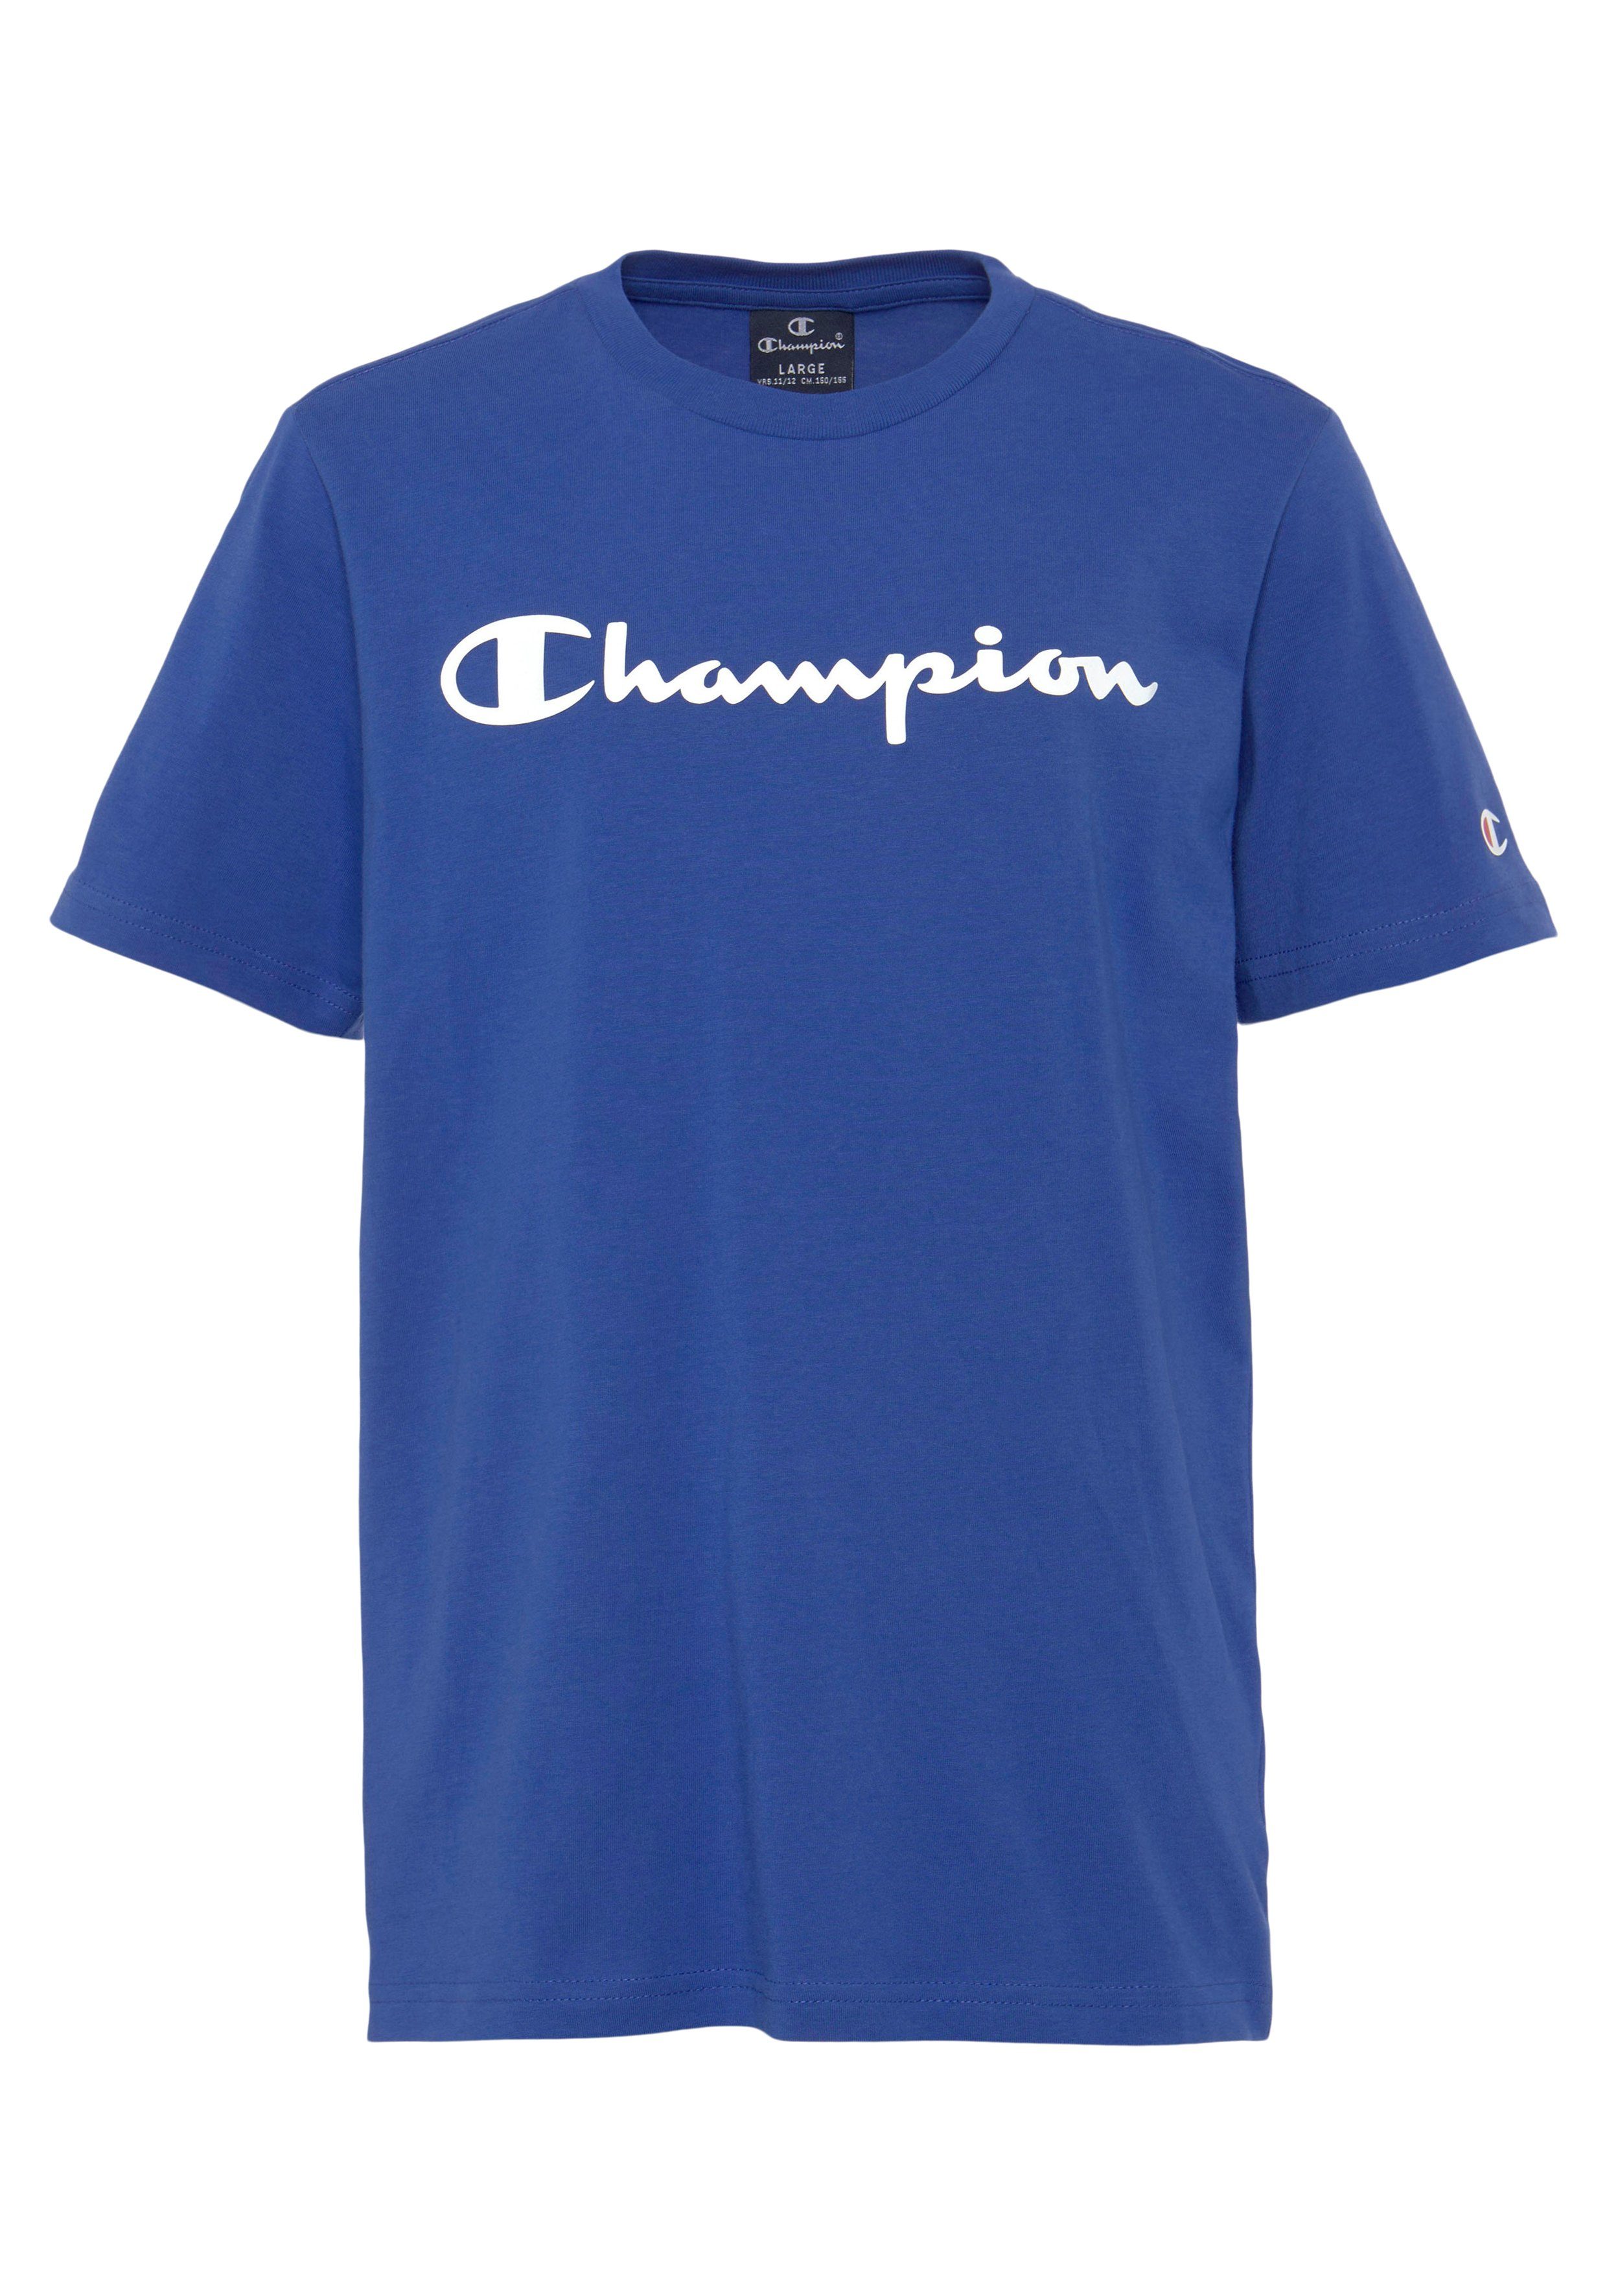 Kinder T-Shirt - Champion 2Pack T-Shirt Crewneck blau/weiß für